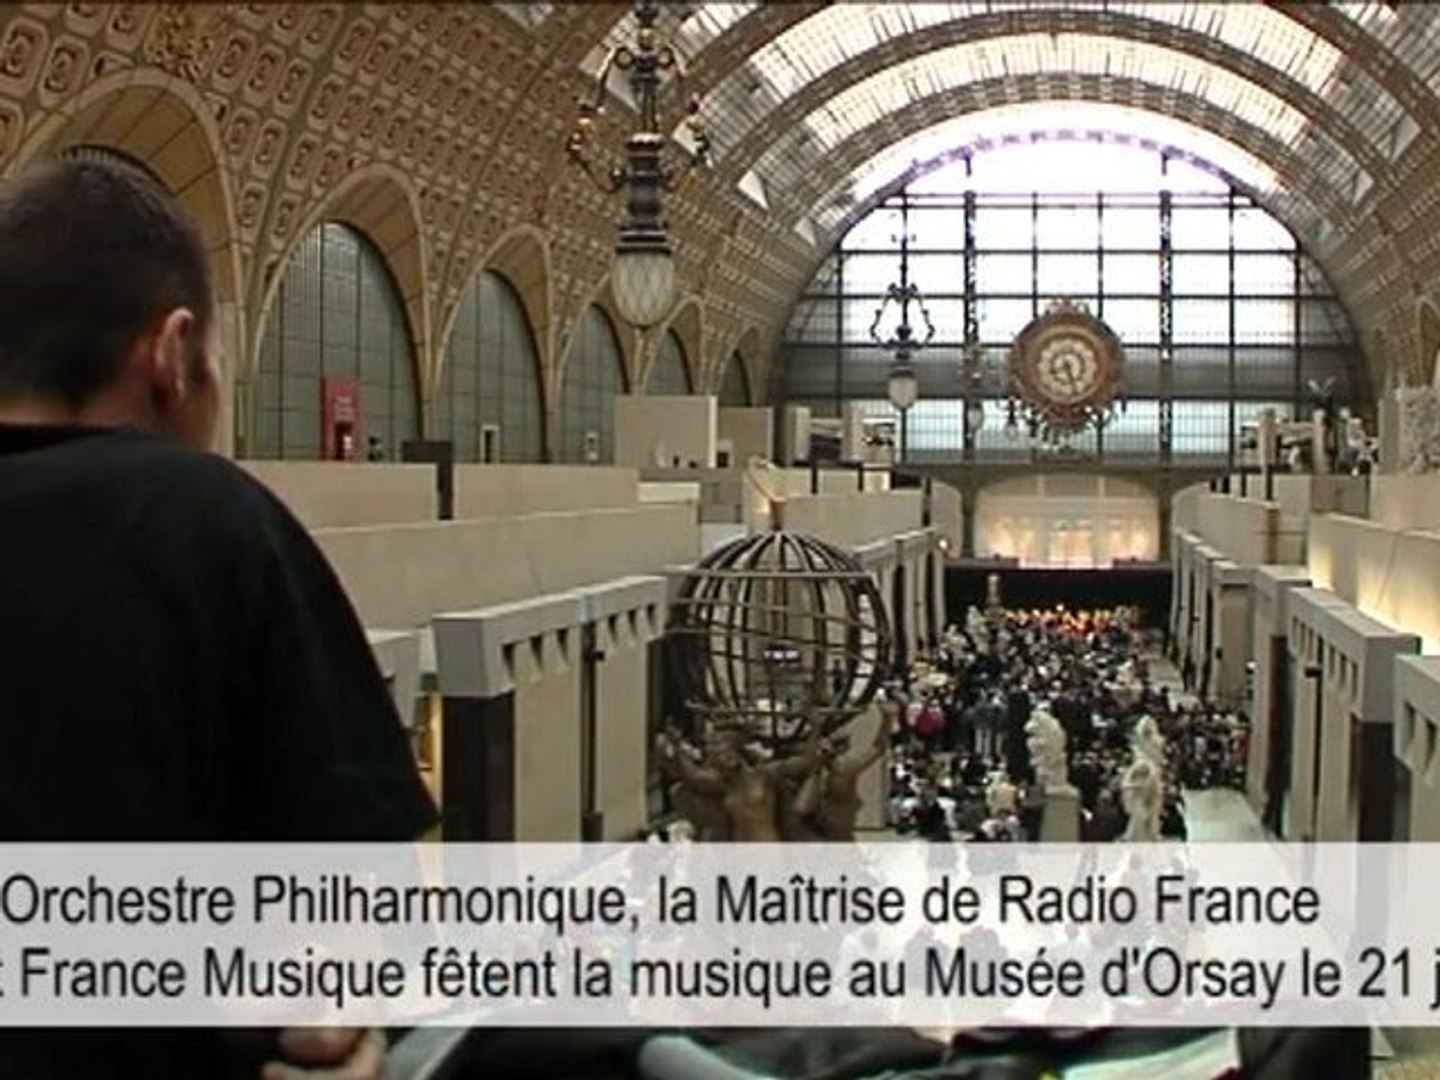 Radio France fête la musique au Musée d'Orsay -21 juin 2010 - Vidéo  Dailymotion